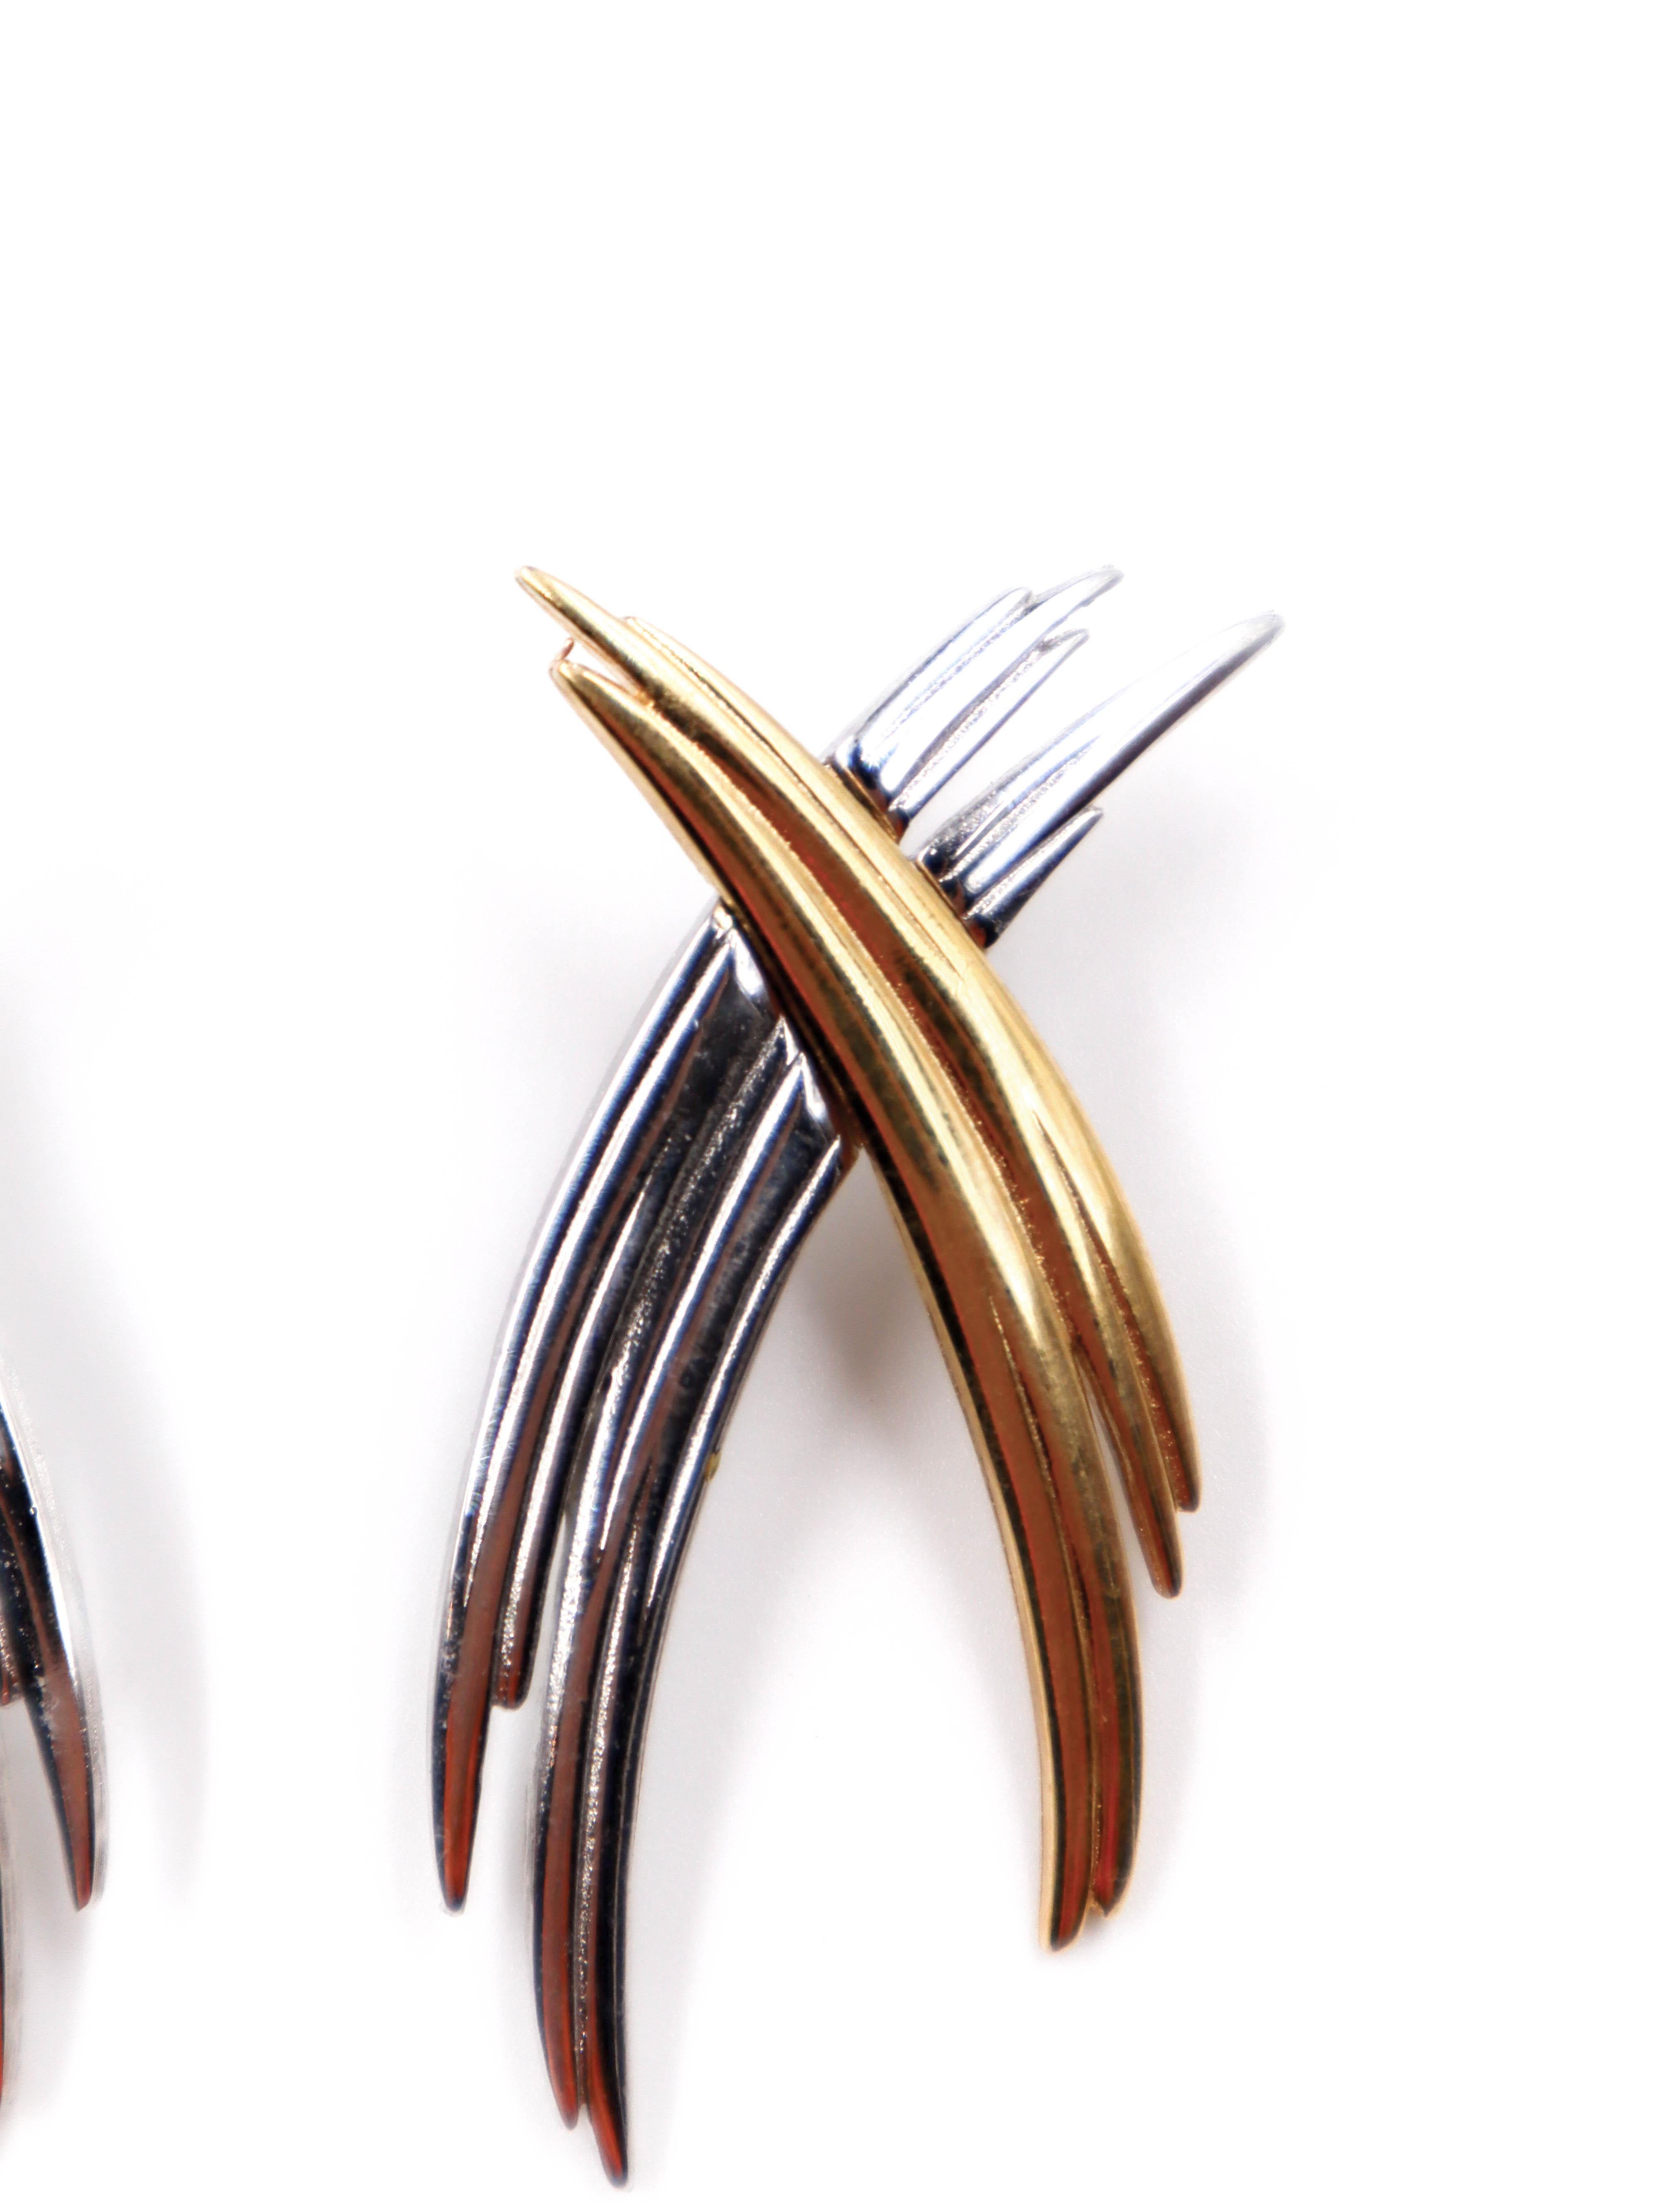 Givenchy X-Ohrringe aus den 1990er Jahren mit einem übergroßen, kontrastierenden Kreuz aus Gold und Silber. Eine coole, moderne Wahl, die gut zu einem schwarzen Blazer oder einem schlichten Abendkleid passt.

Merkmal
MATERIAL: Metall
Farbe: Silber